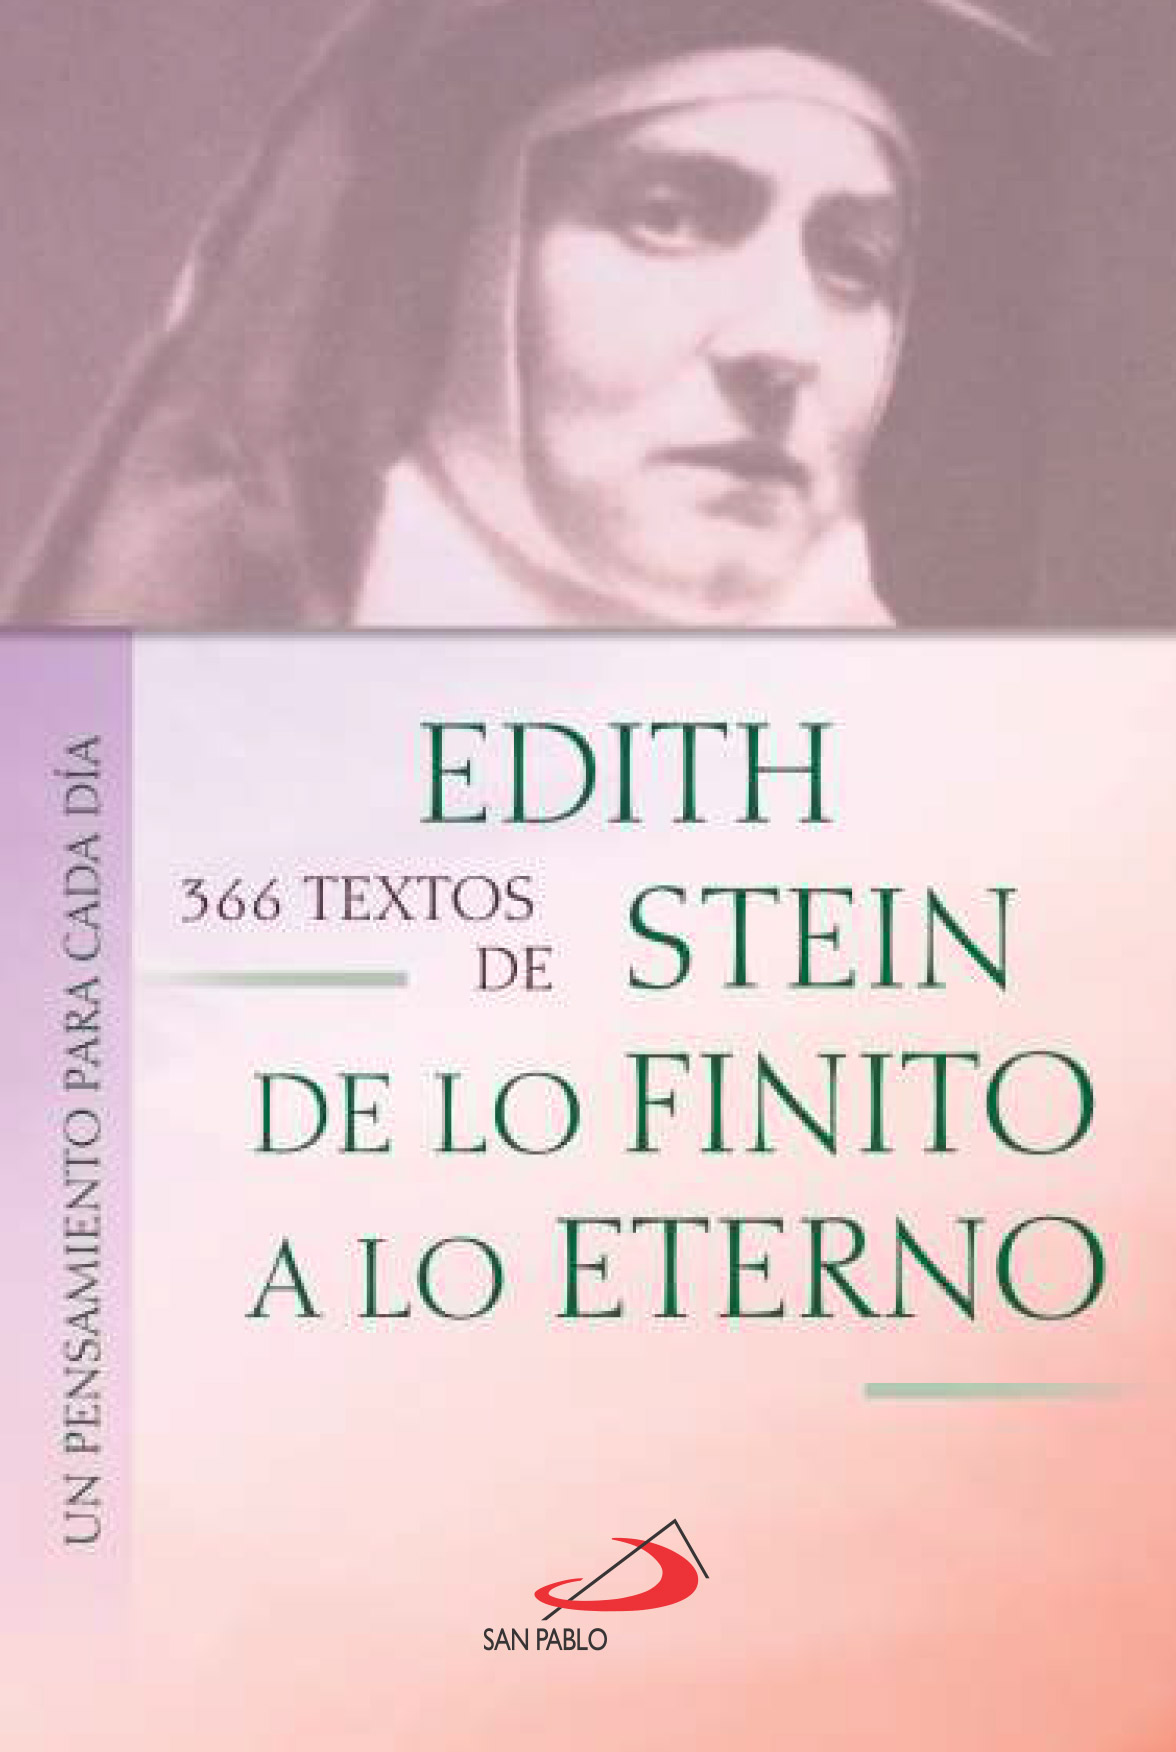 366 TEXTOS DE EDITH STEIN